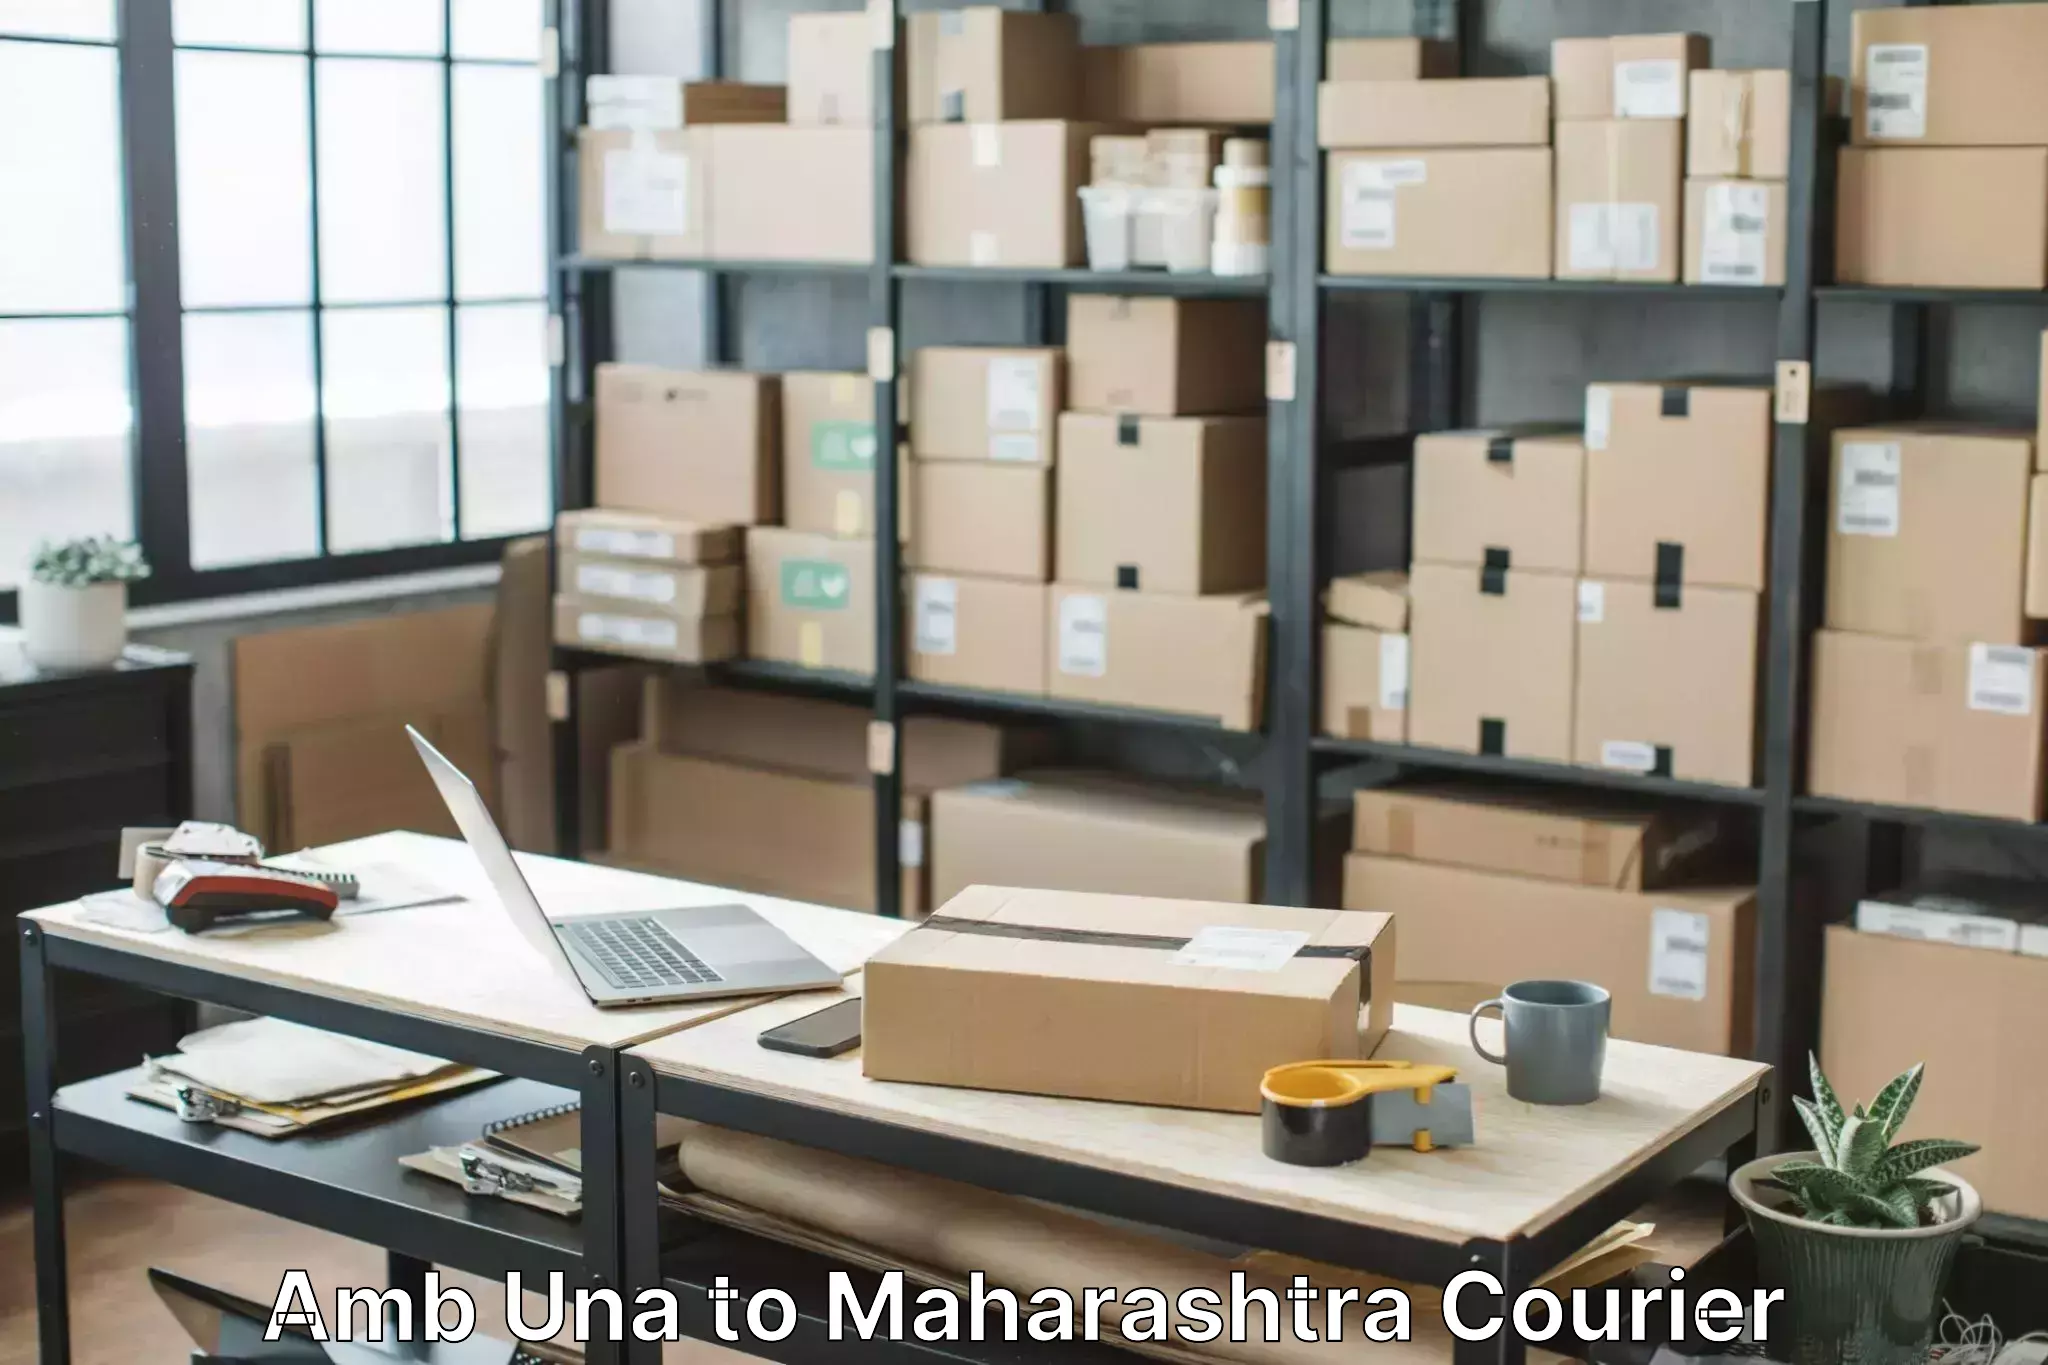 Specialized moving company Amb Una to Maharashtra